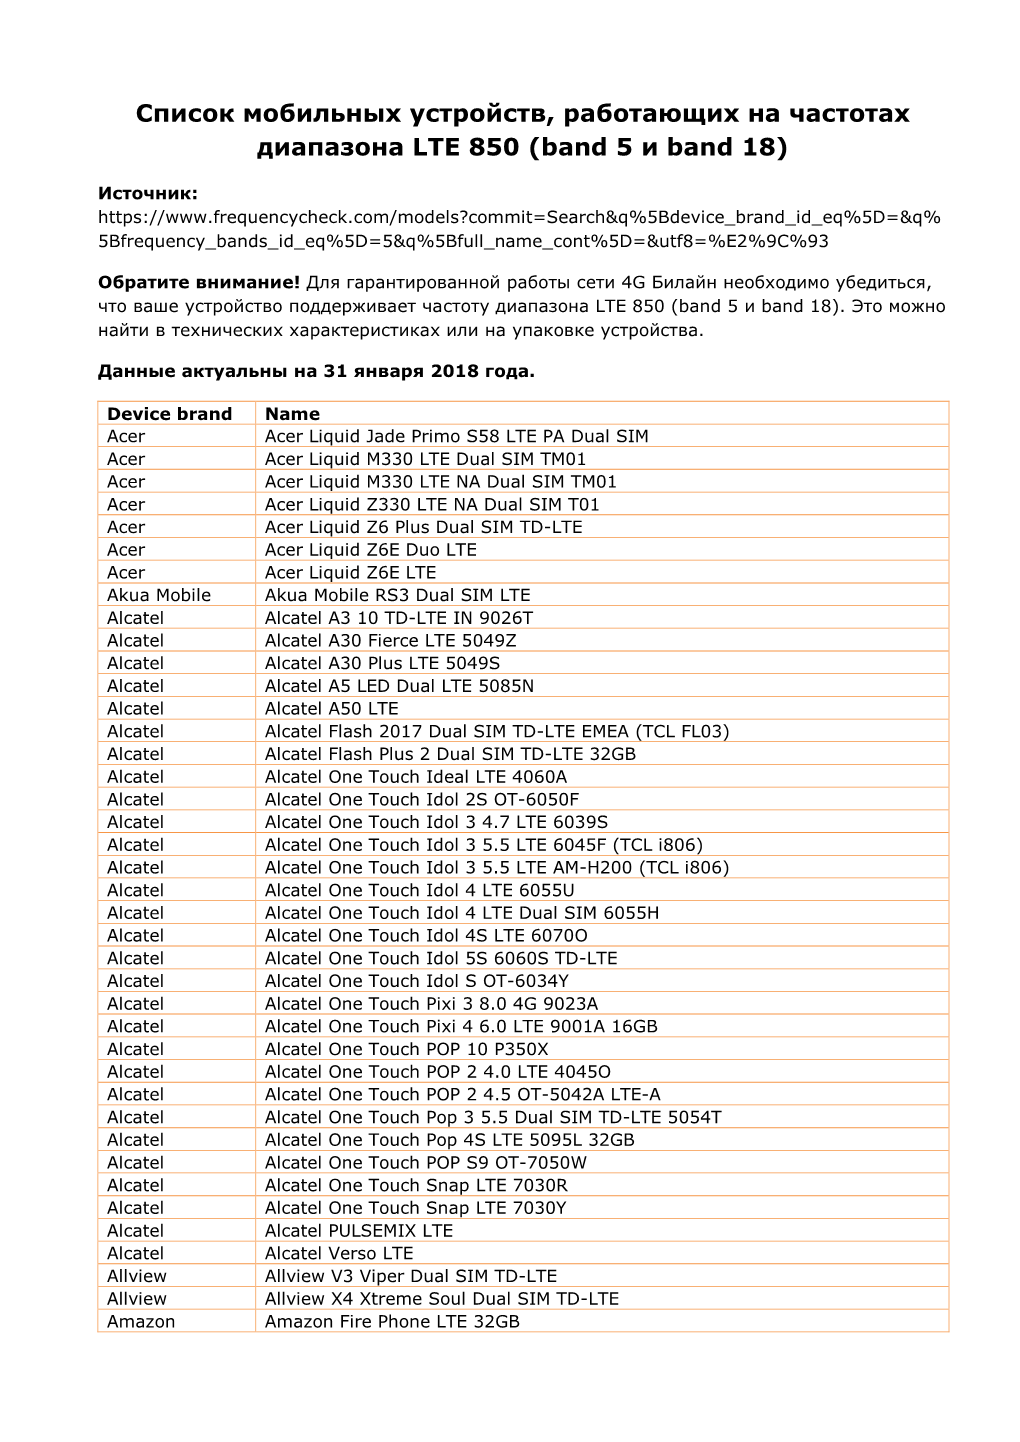 Список Мобильных Устройств, Работающих На Частотах Диапазона LTE 850 (Band 5 И Band 18)